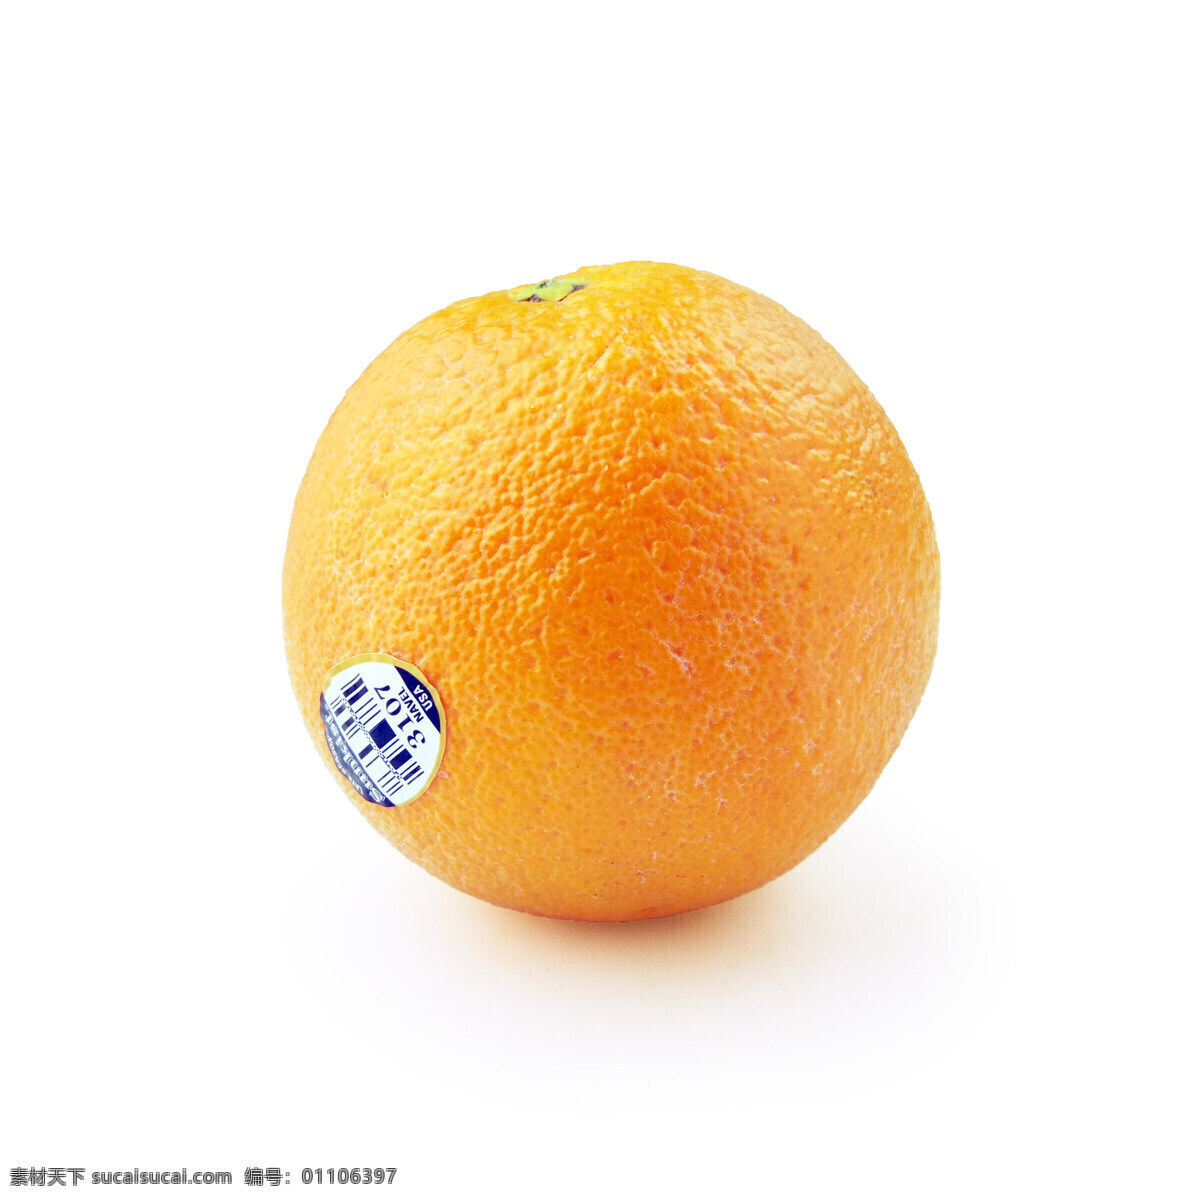 新奇士脐橙 sunkist 新奇士 脐橙 橙子 甜橙 生物世界 水果